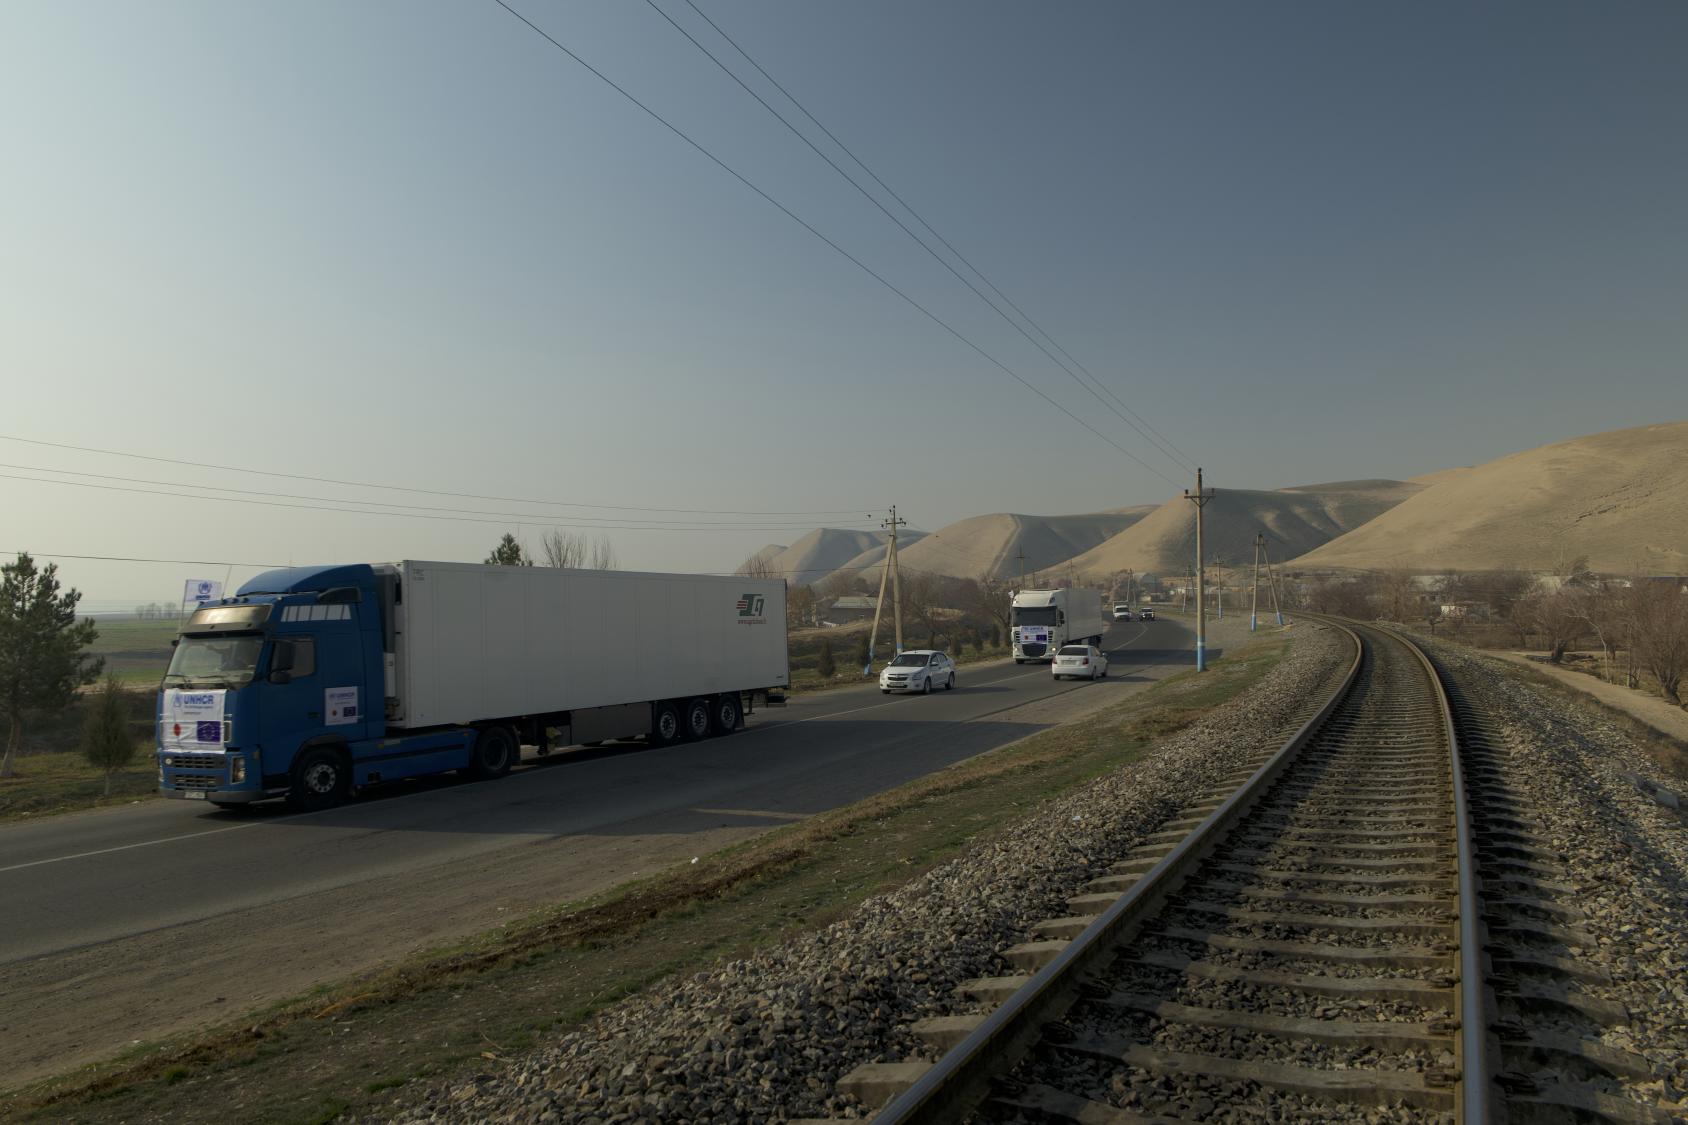 Des camions transportent des fournitures humanitaires essentielles depuis le Centre logistique régional d'aide humanitaire de Termez, en Ouzbékistan, jusqu'aux quatre coins de l'Afghanistan.